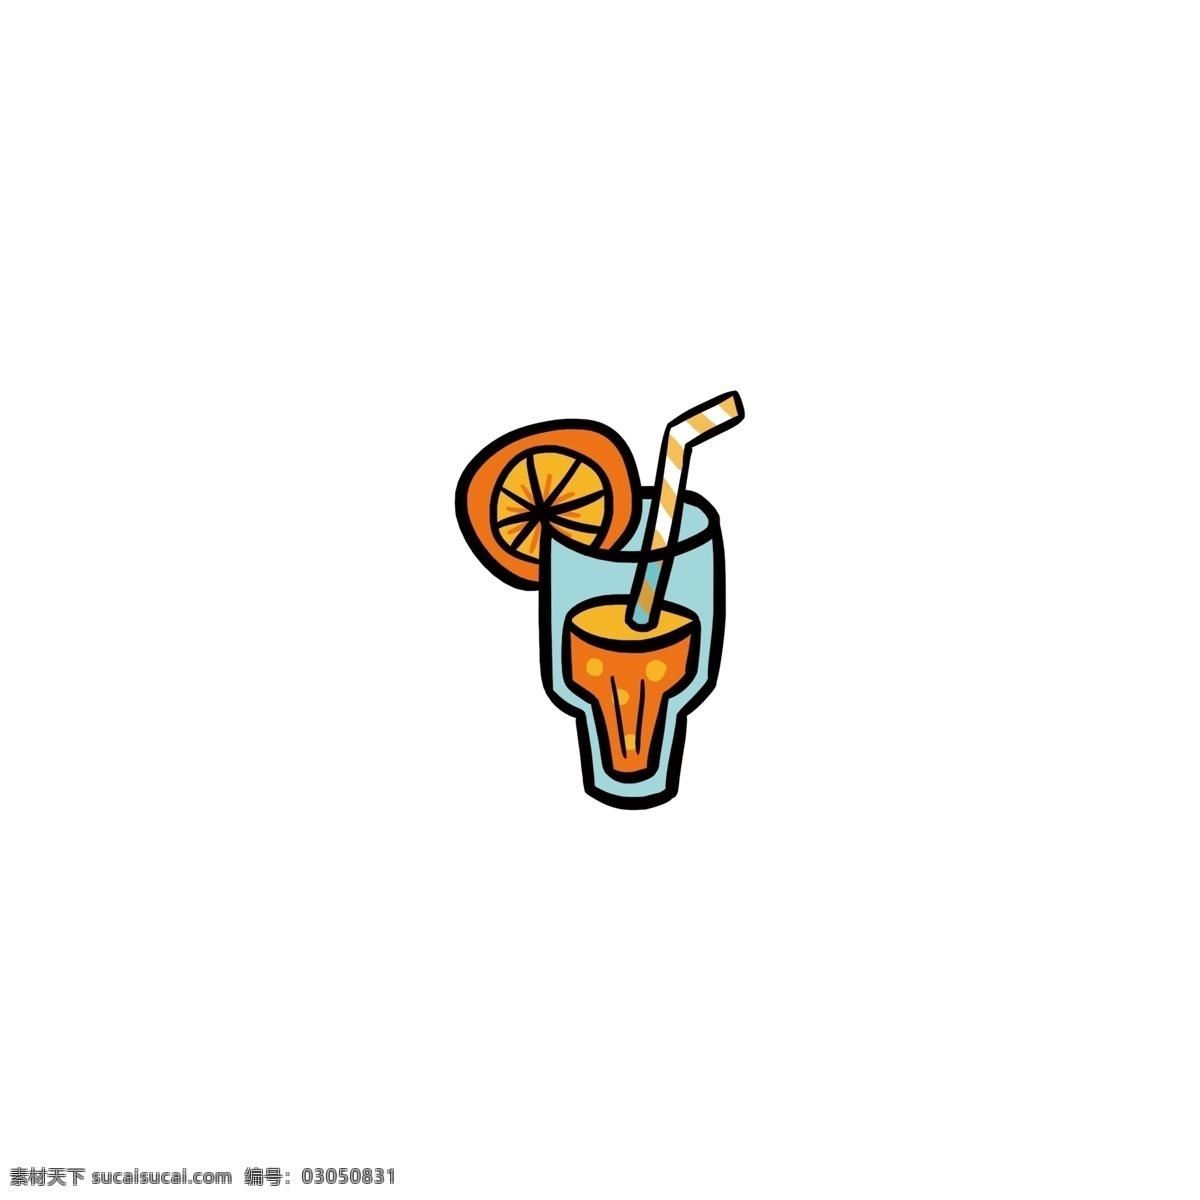 可爱 卡通 夏天 果汁 手绘 食物 图标 元素 美食 橙汁 冷饮 小吃 酒水 设计元素 原创 柠檬 饮料 餐厅 饭店